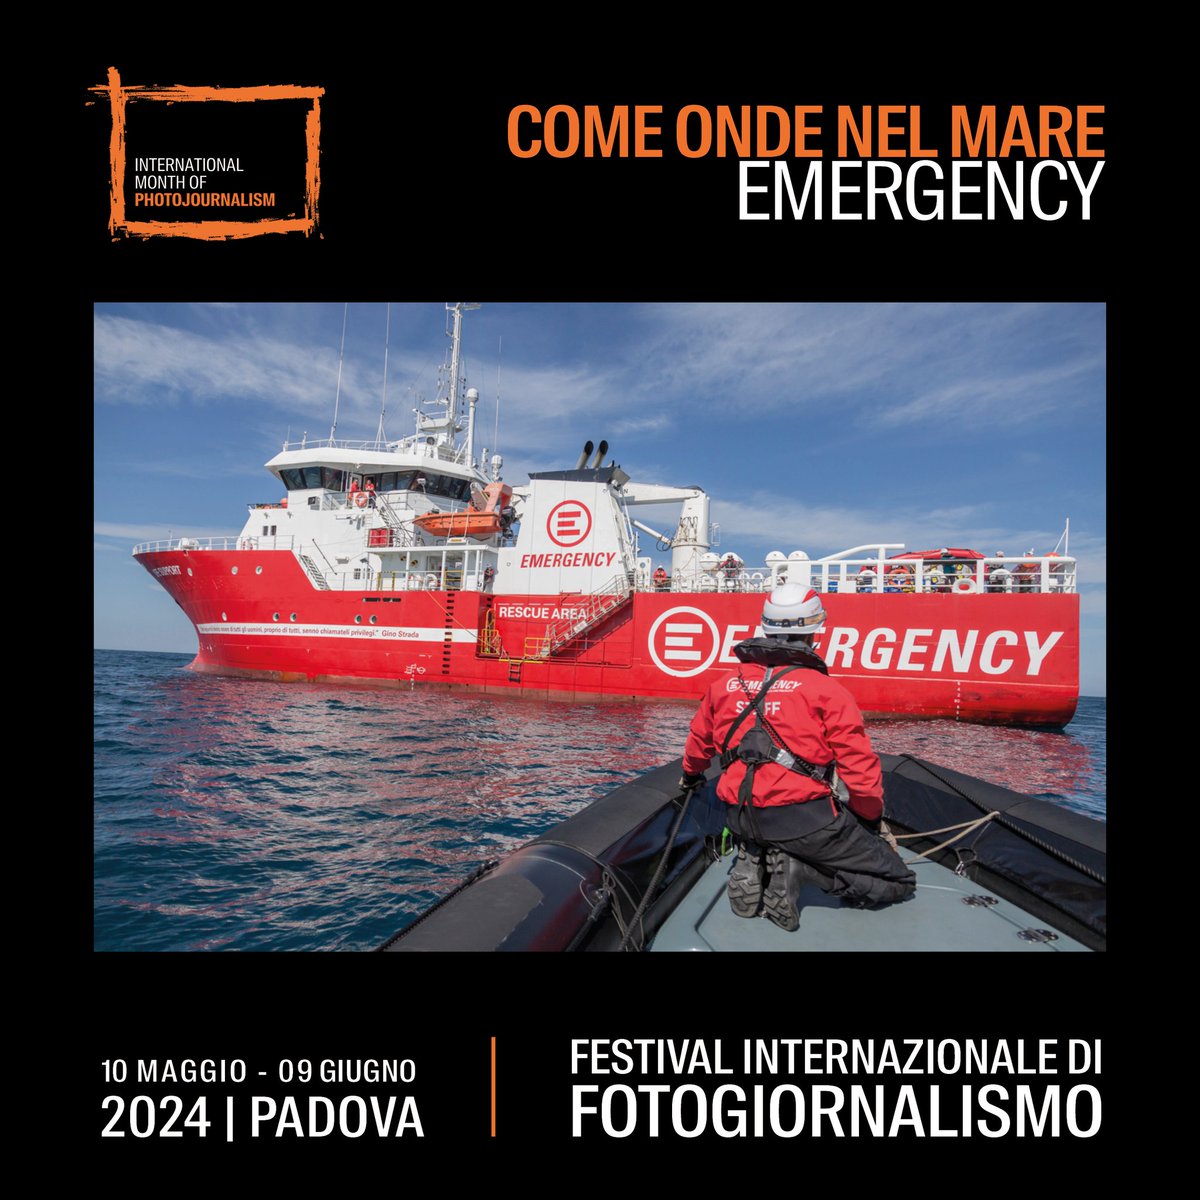 Durante il Festival Internazionale di Fotogiornalismo a #Padova puoi visitare “Come onde del mare”, la nostra mostra fotografica interattiva per raccontare le attività di ricerca e soccorso in mare della #LifeSupport. Per saperne di più: impfestival.com/come-onde-del-…